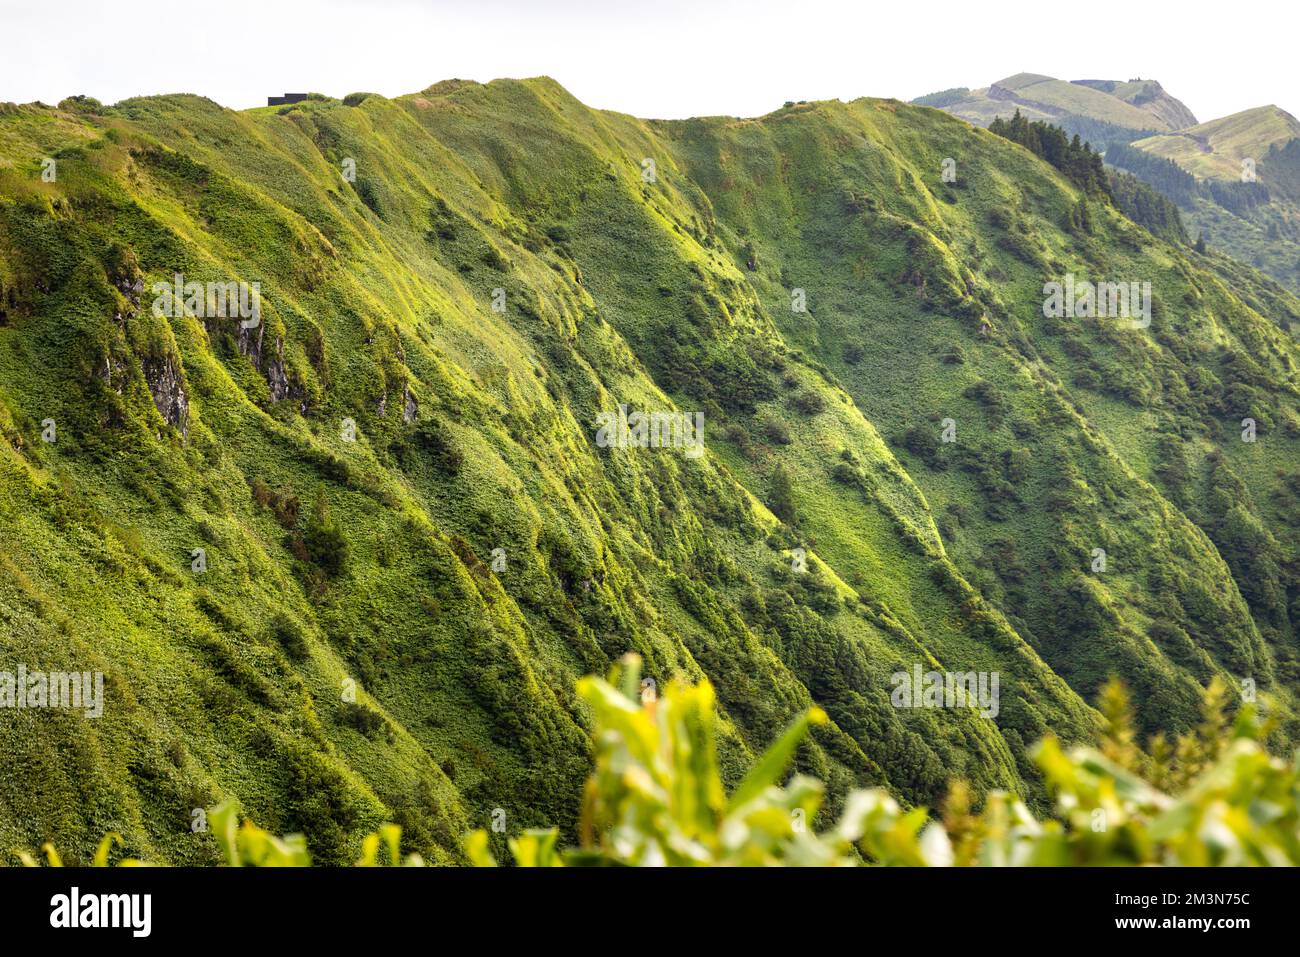 Parois verdoyantes de cratère de la caldeira à Sete Cidades, Açores Banque D'Images